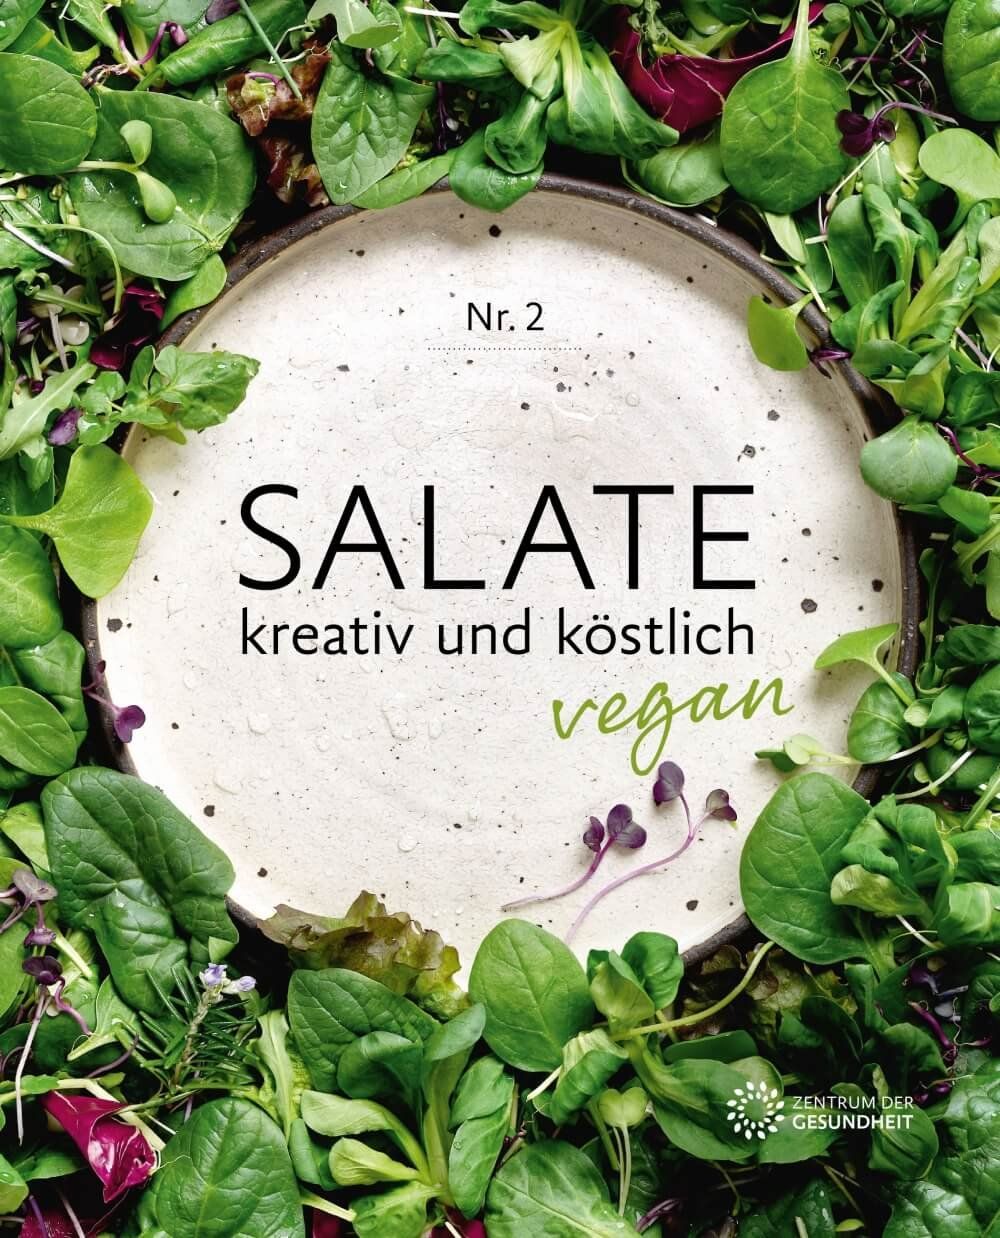 Zentrum der Gesundheit - Vegane Salate Kochbuch